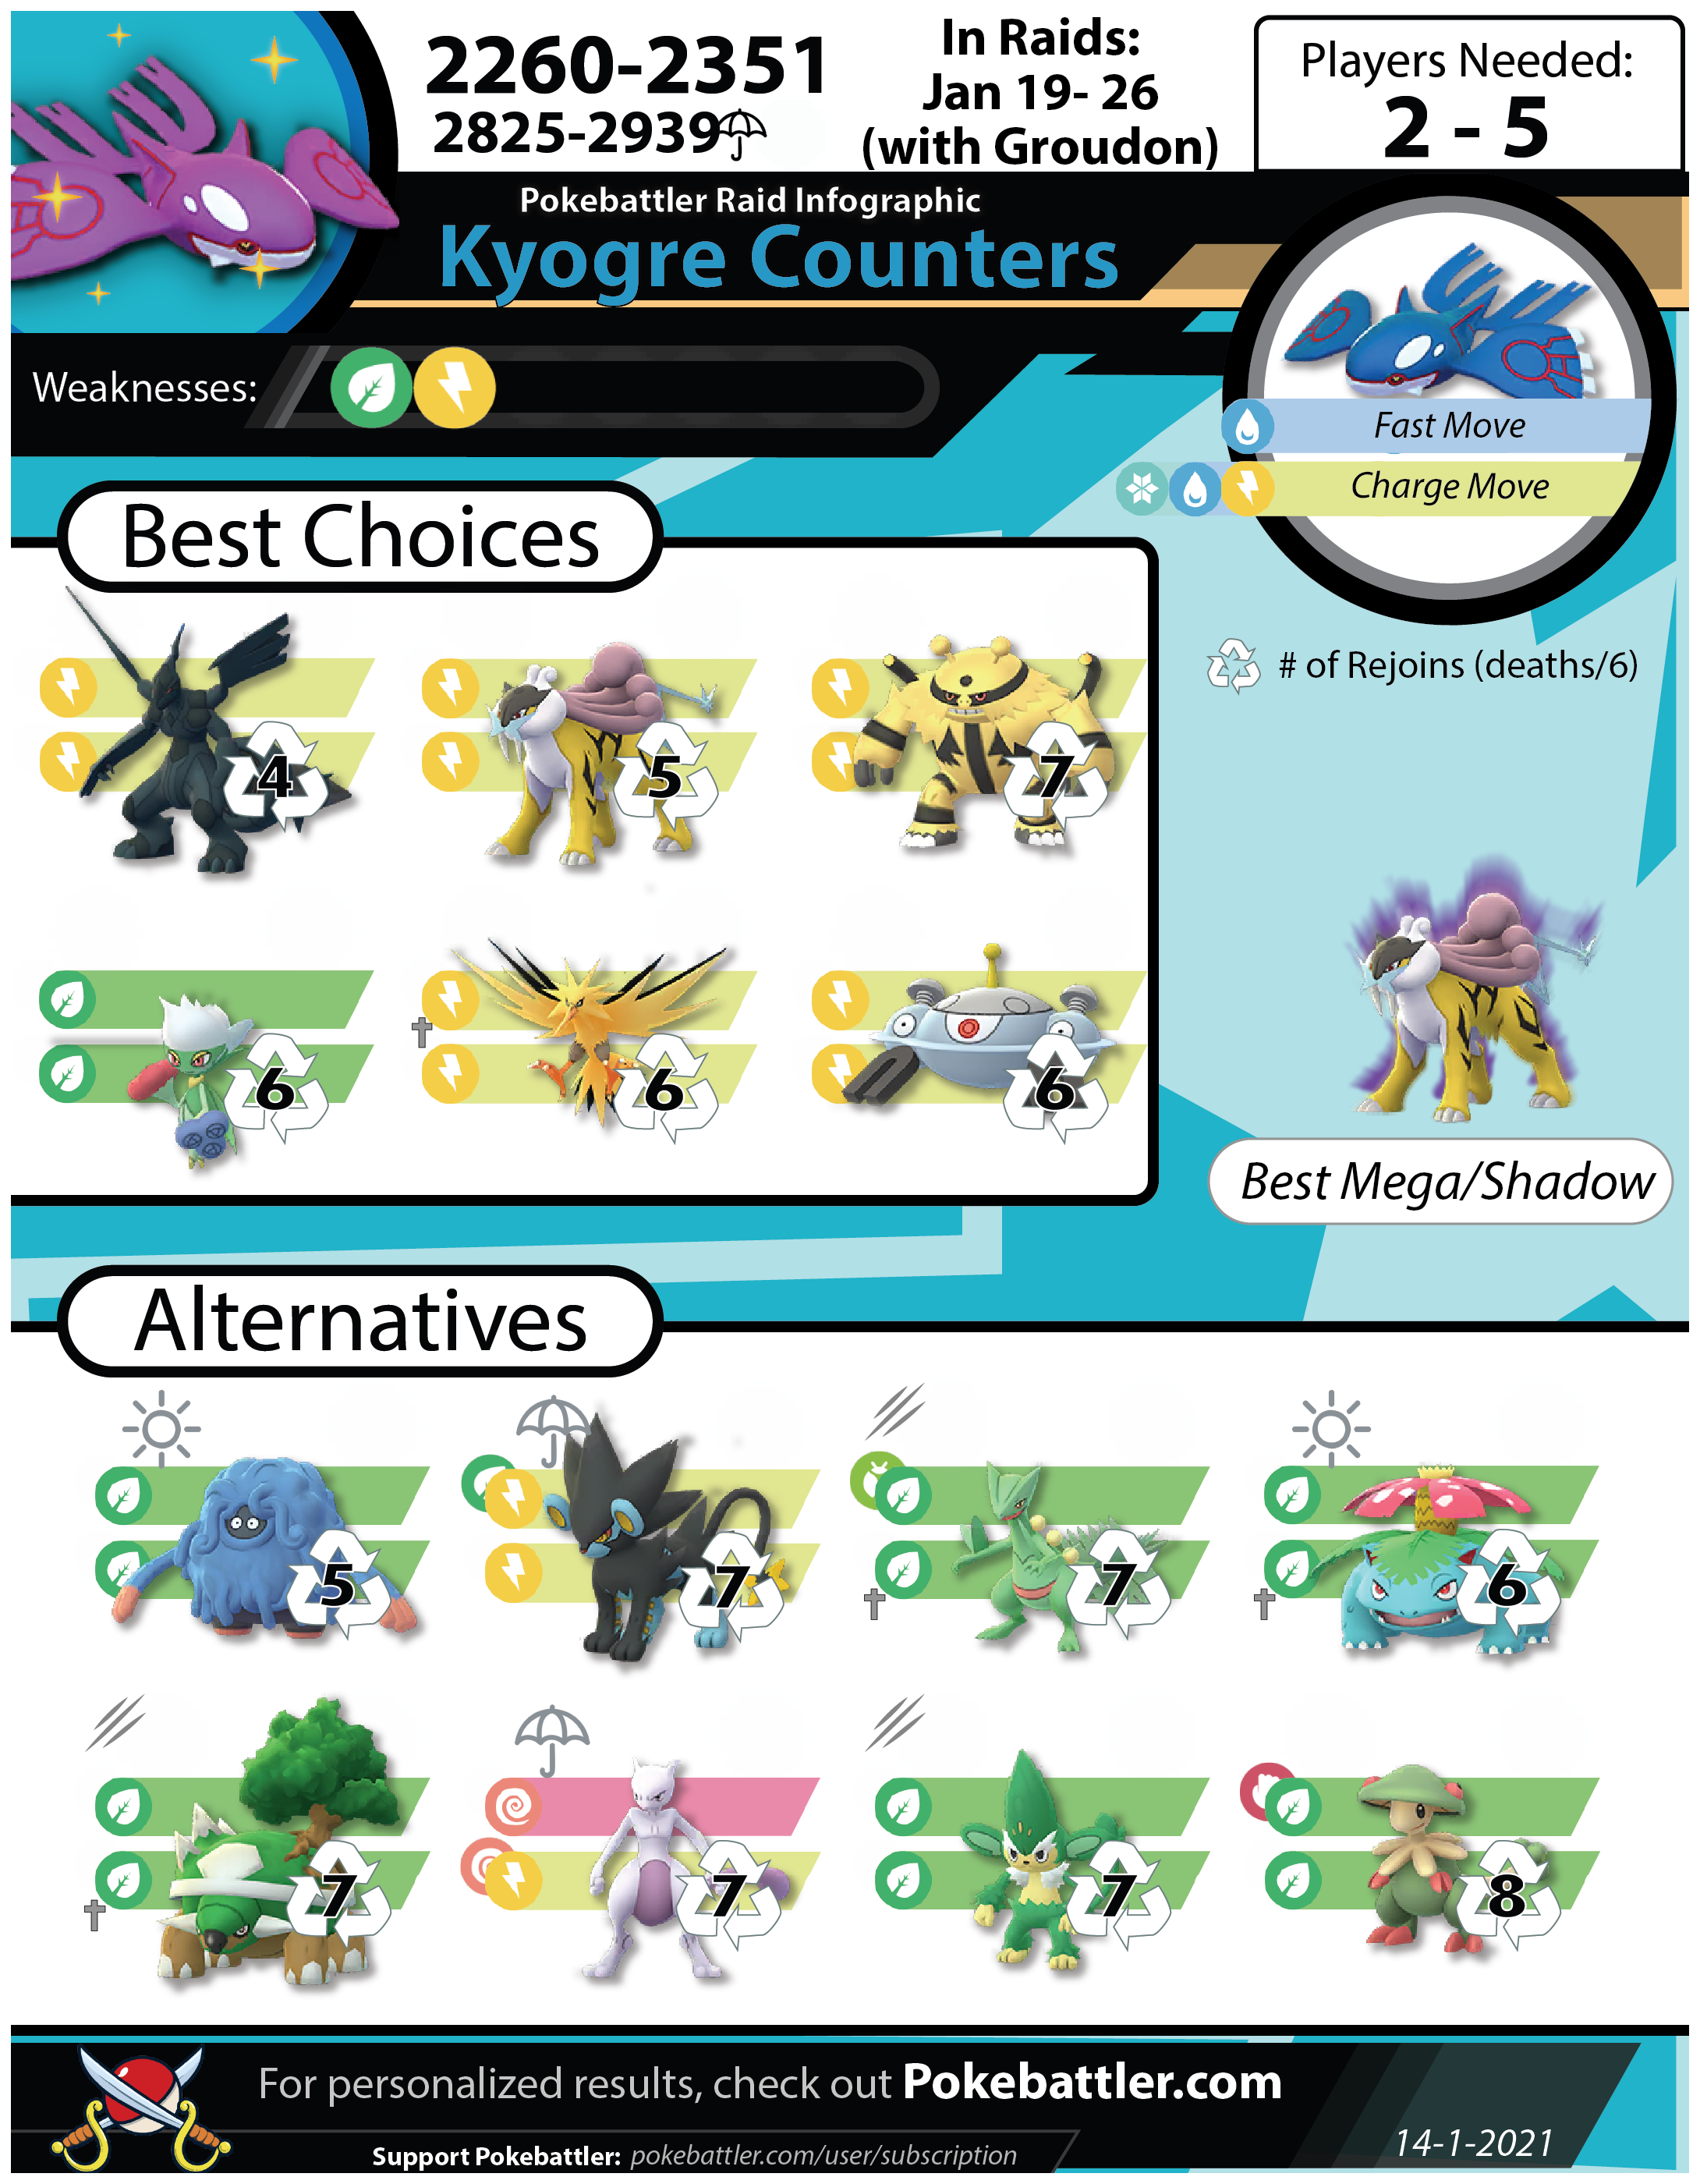 Kyogre é disponibilizado em Raid Battles de Pokémon GO - NerdBunker